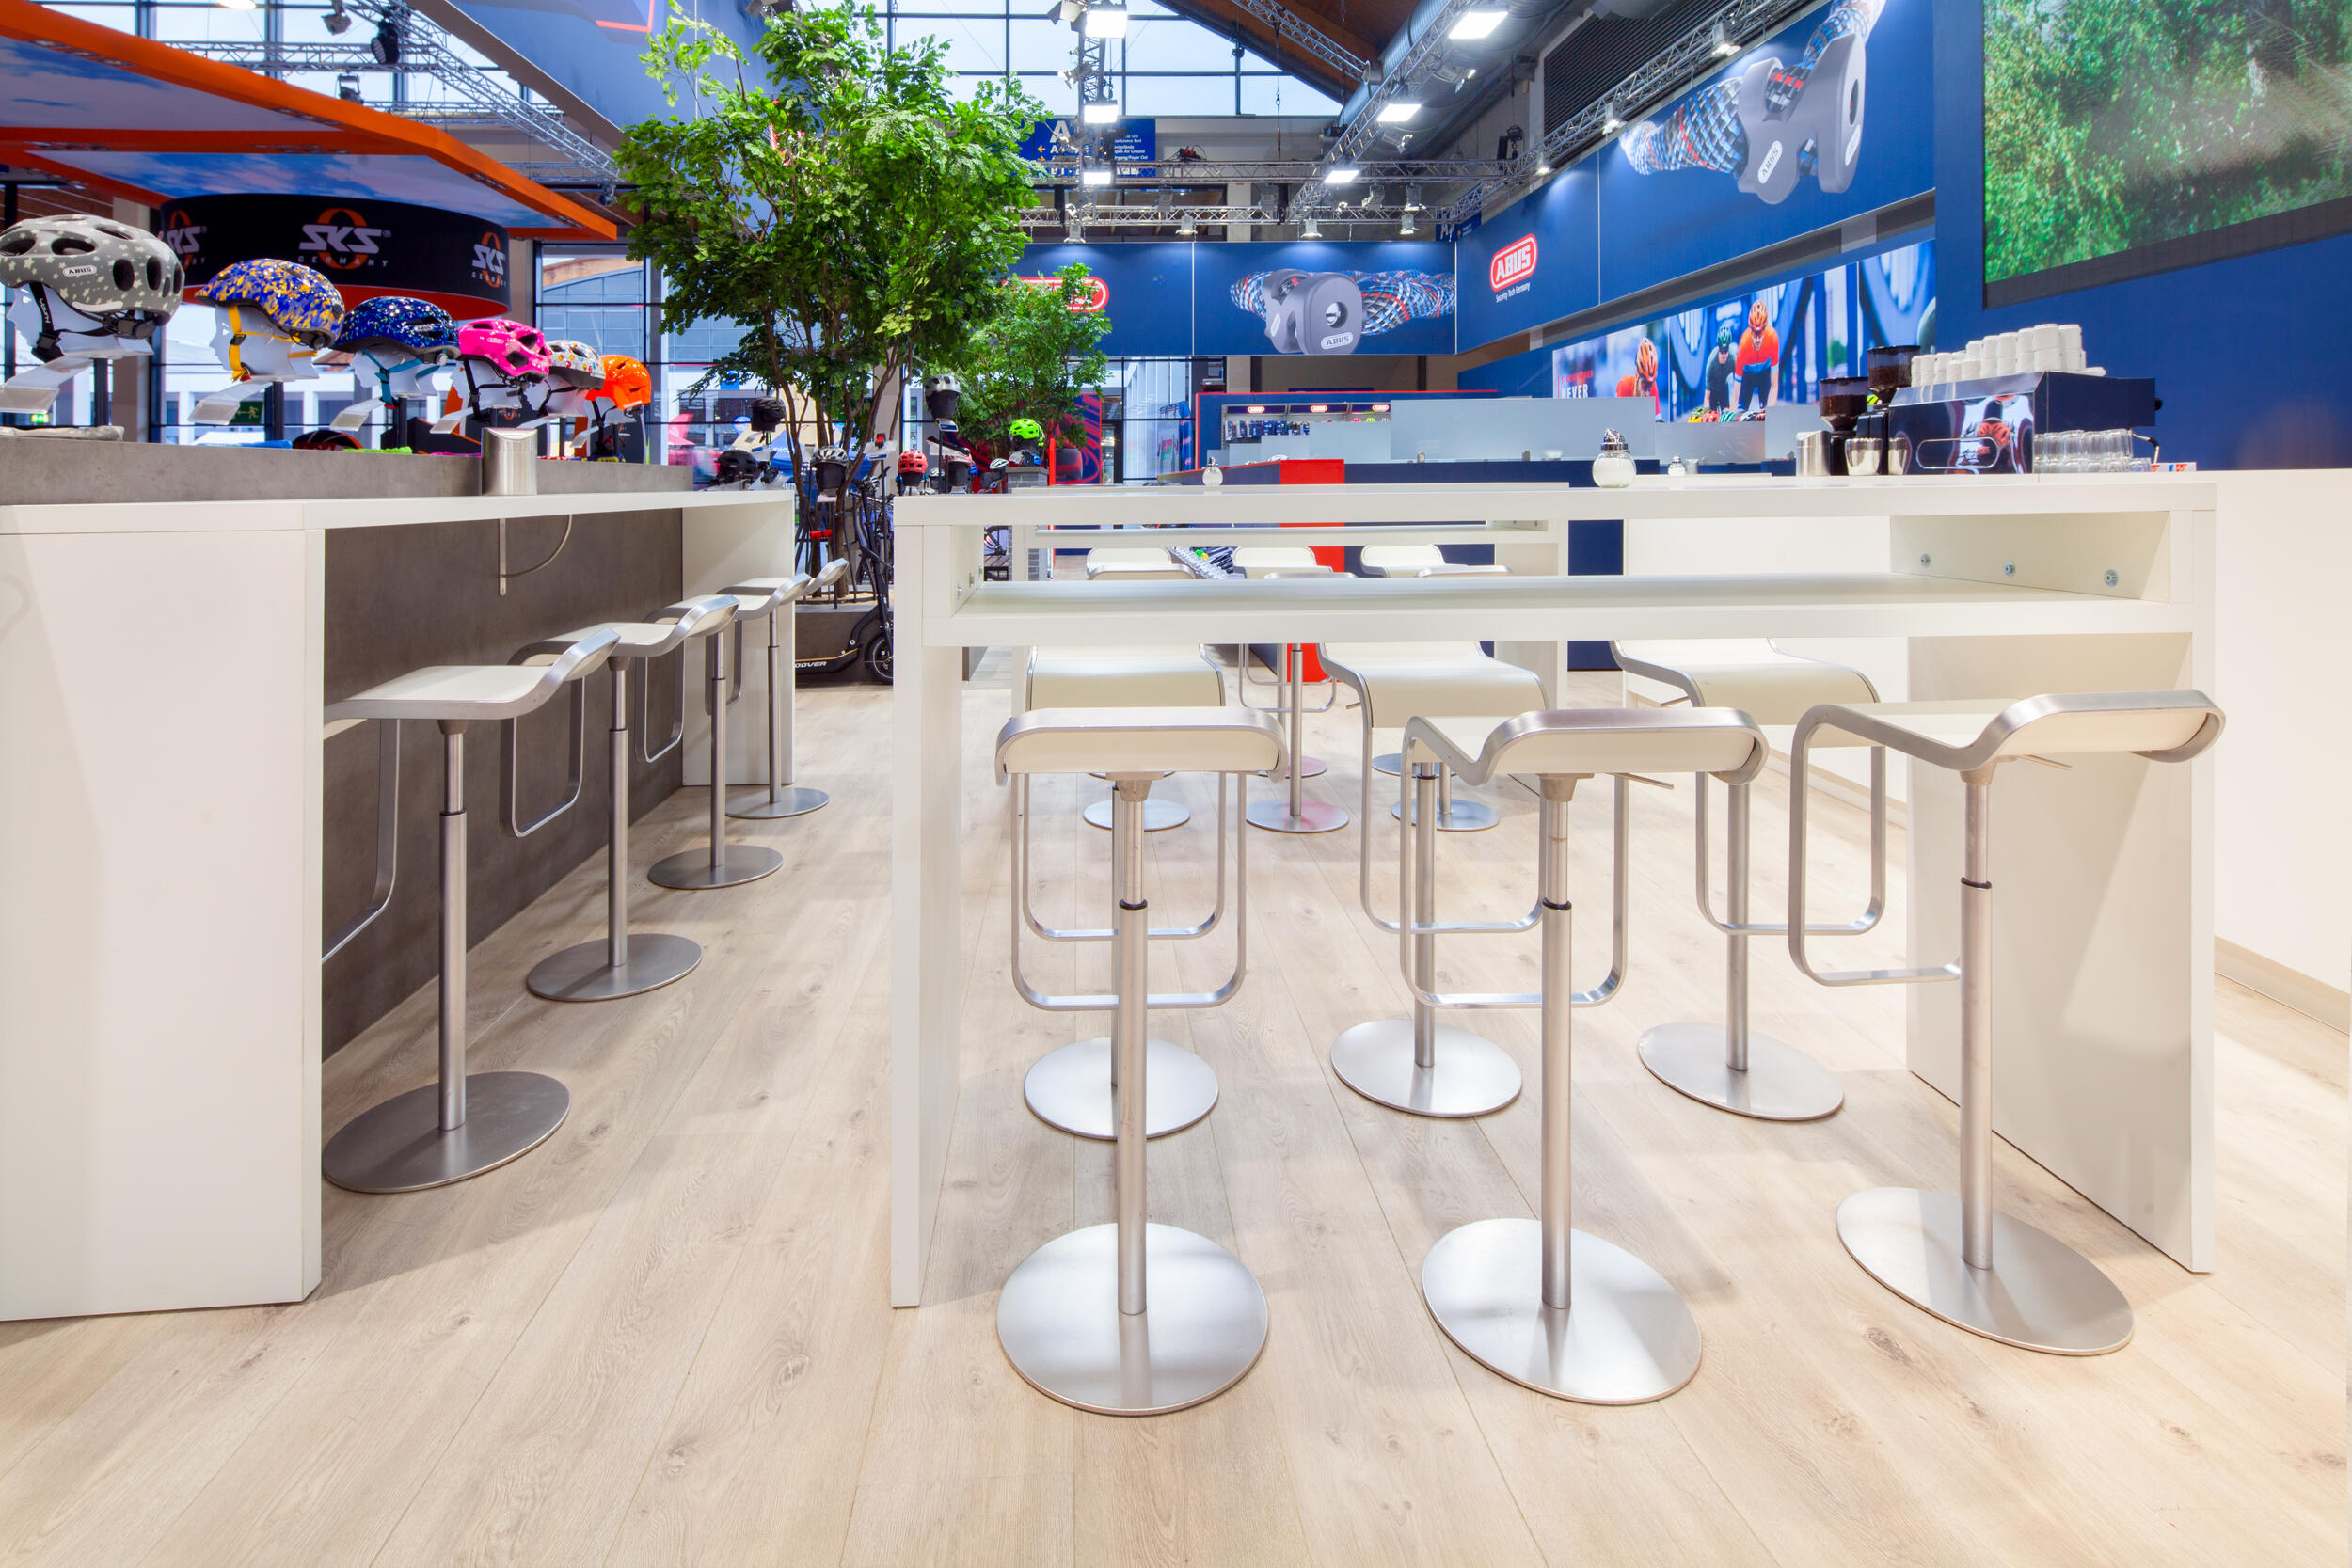 Design meubels van Adexpo op de expositie Eurobike 2019